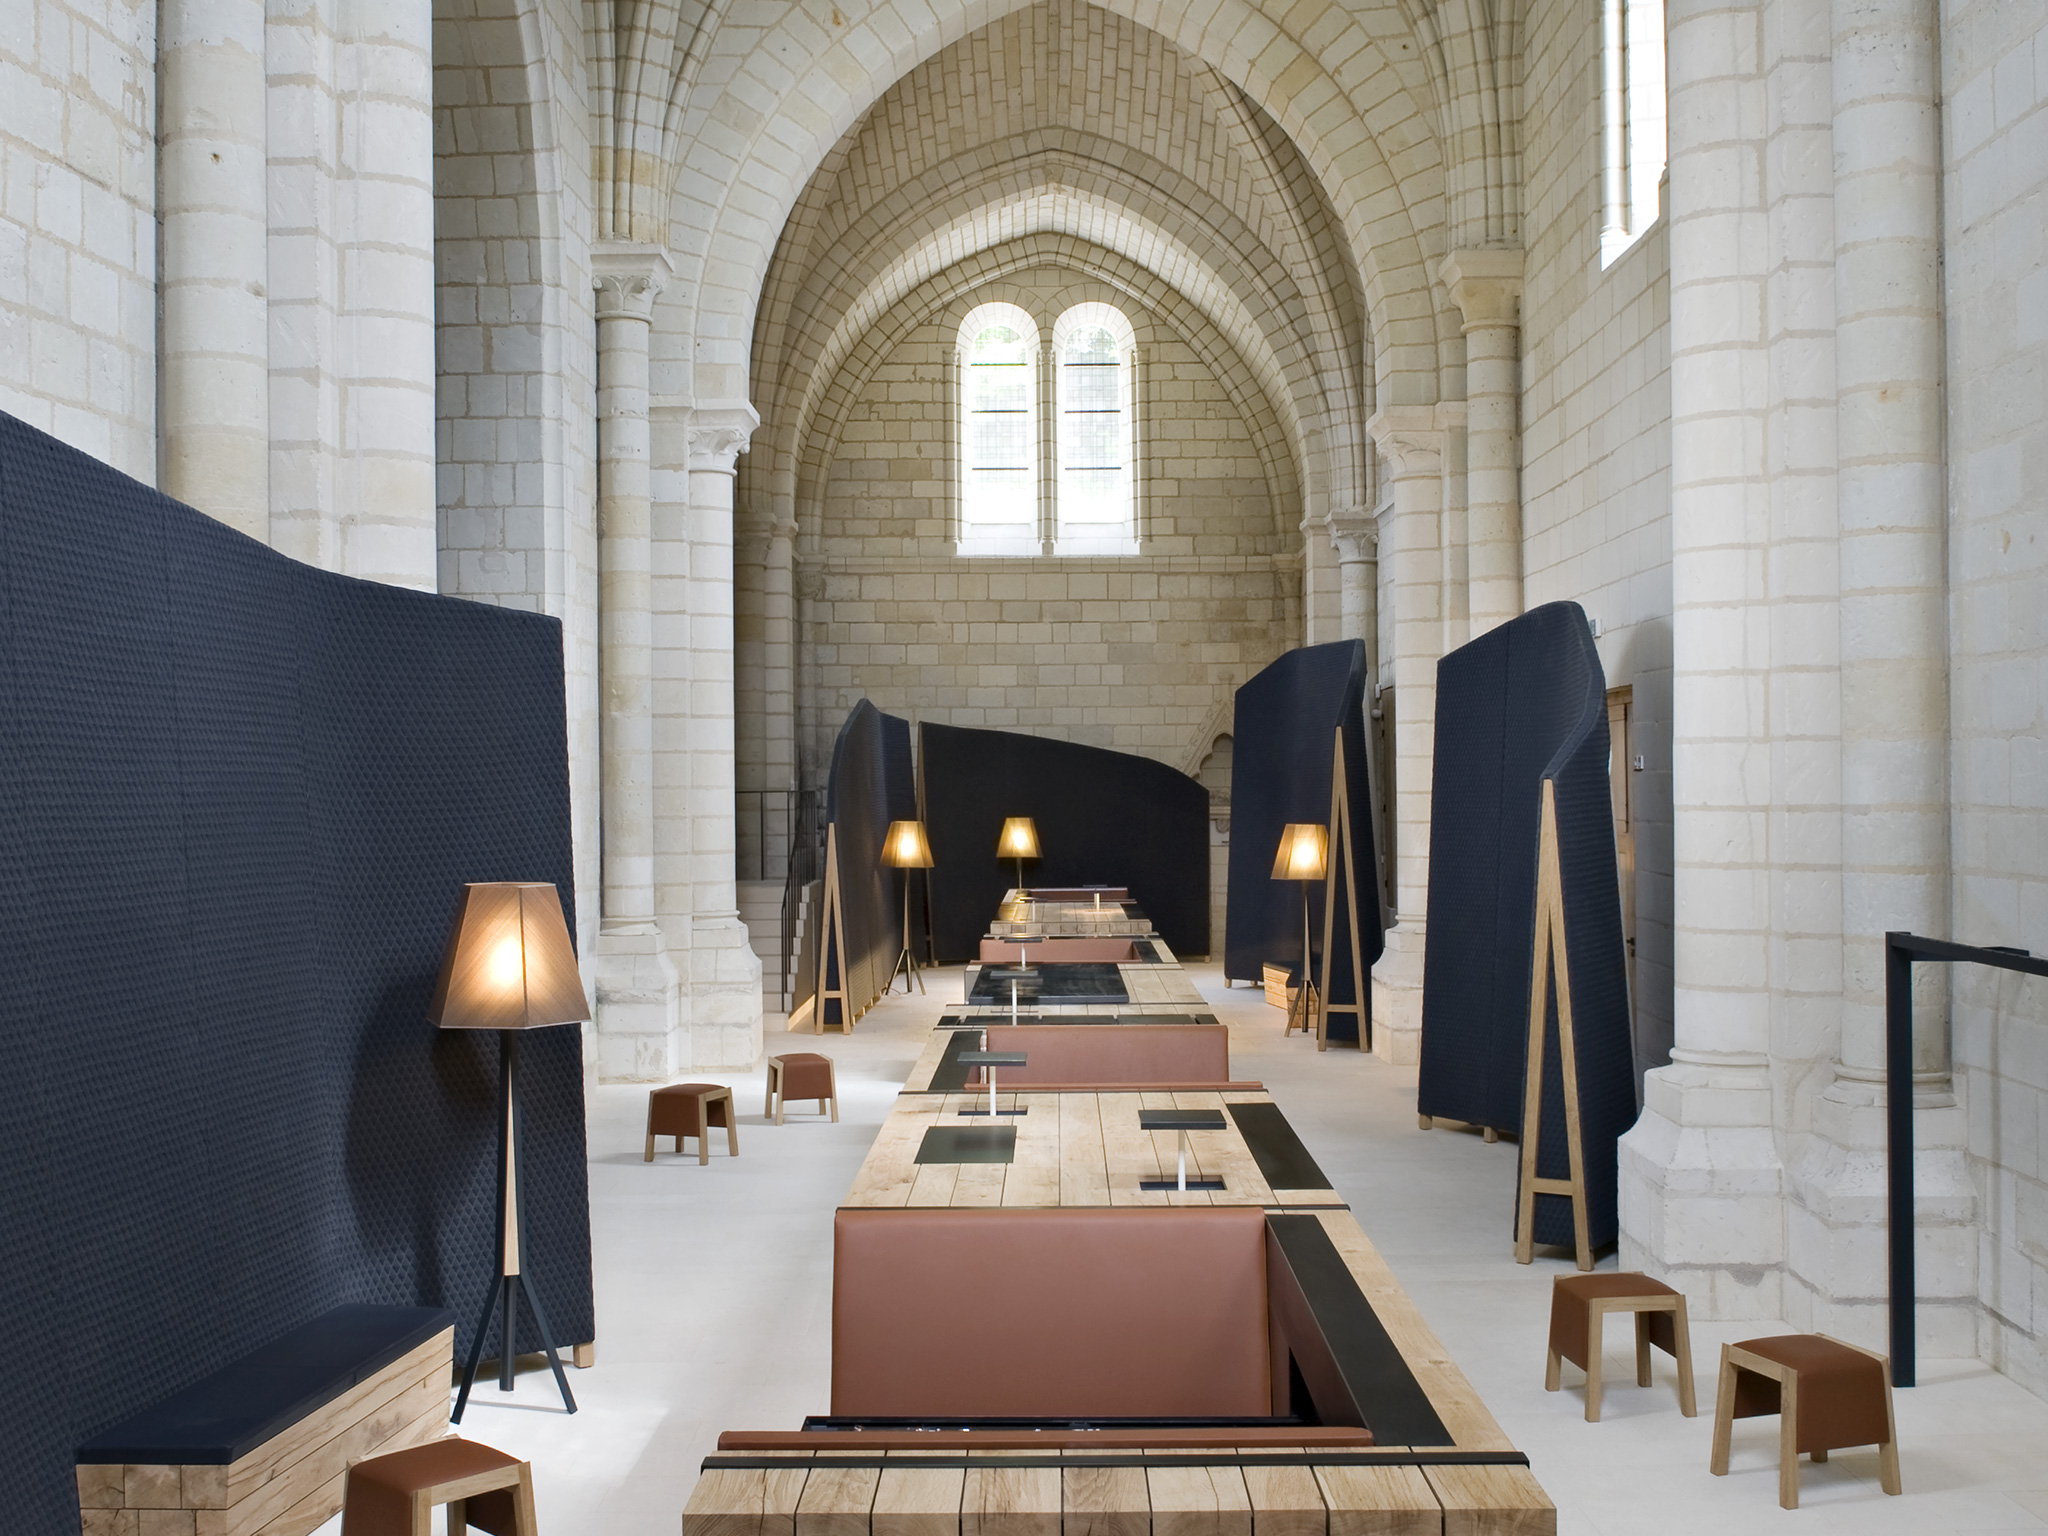 Hébergement insolite : dormir à l'abbaye de Fontevraud